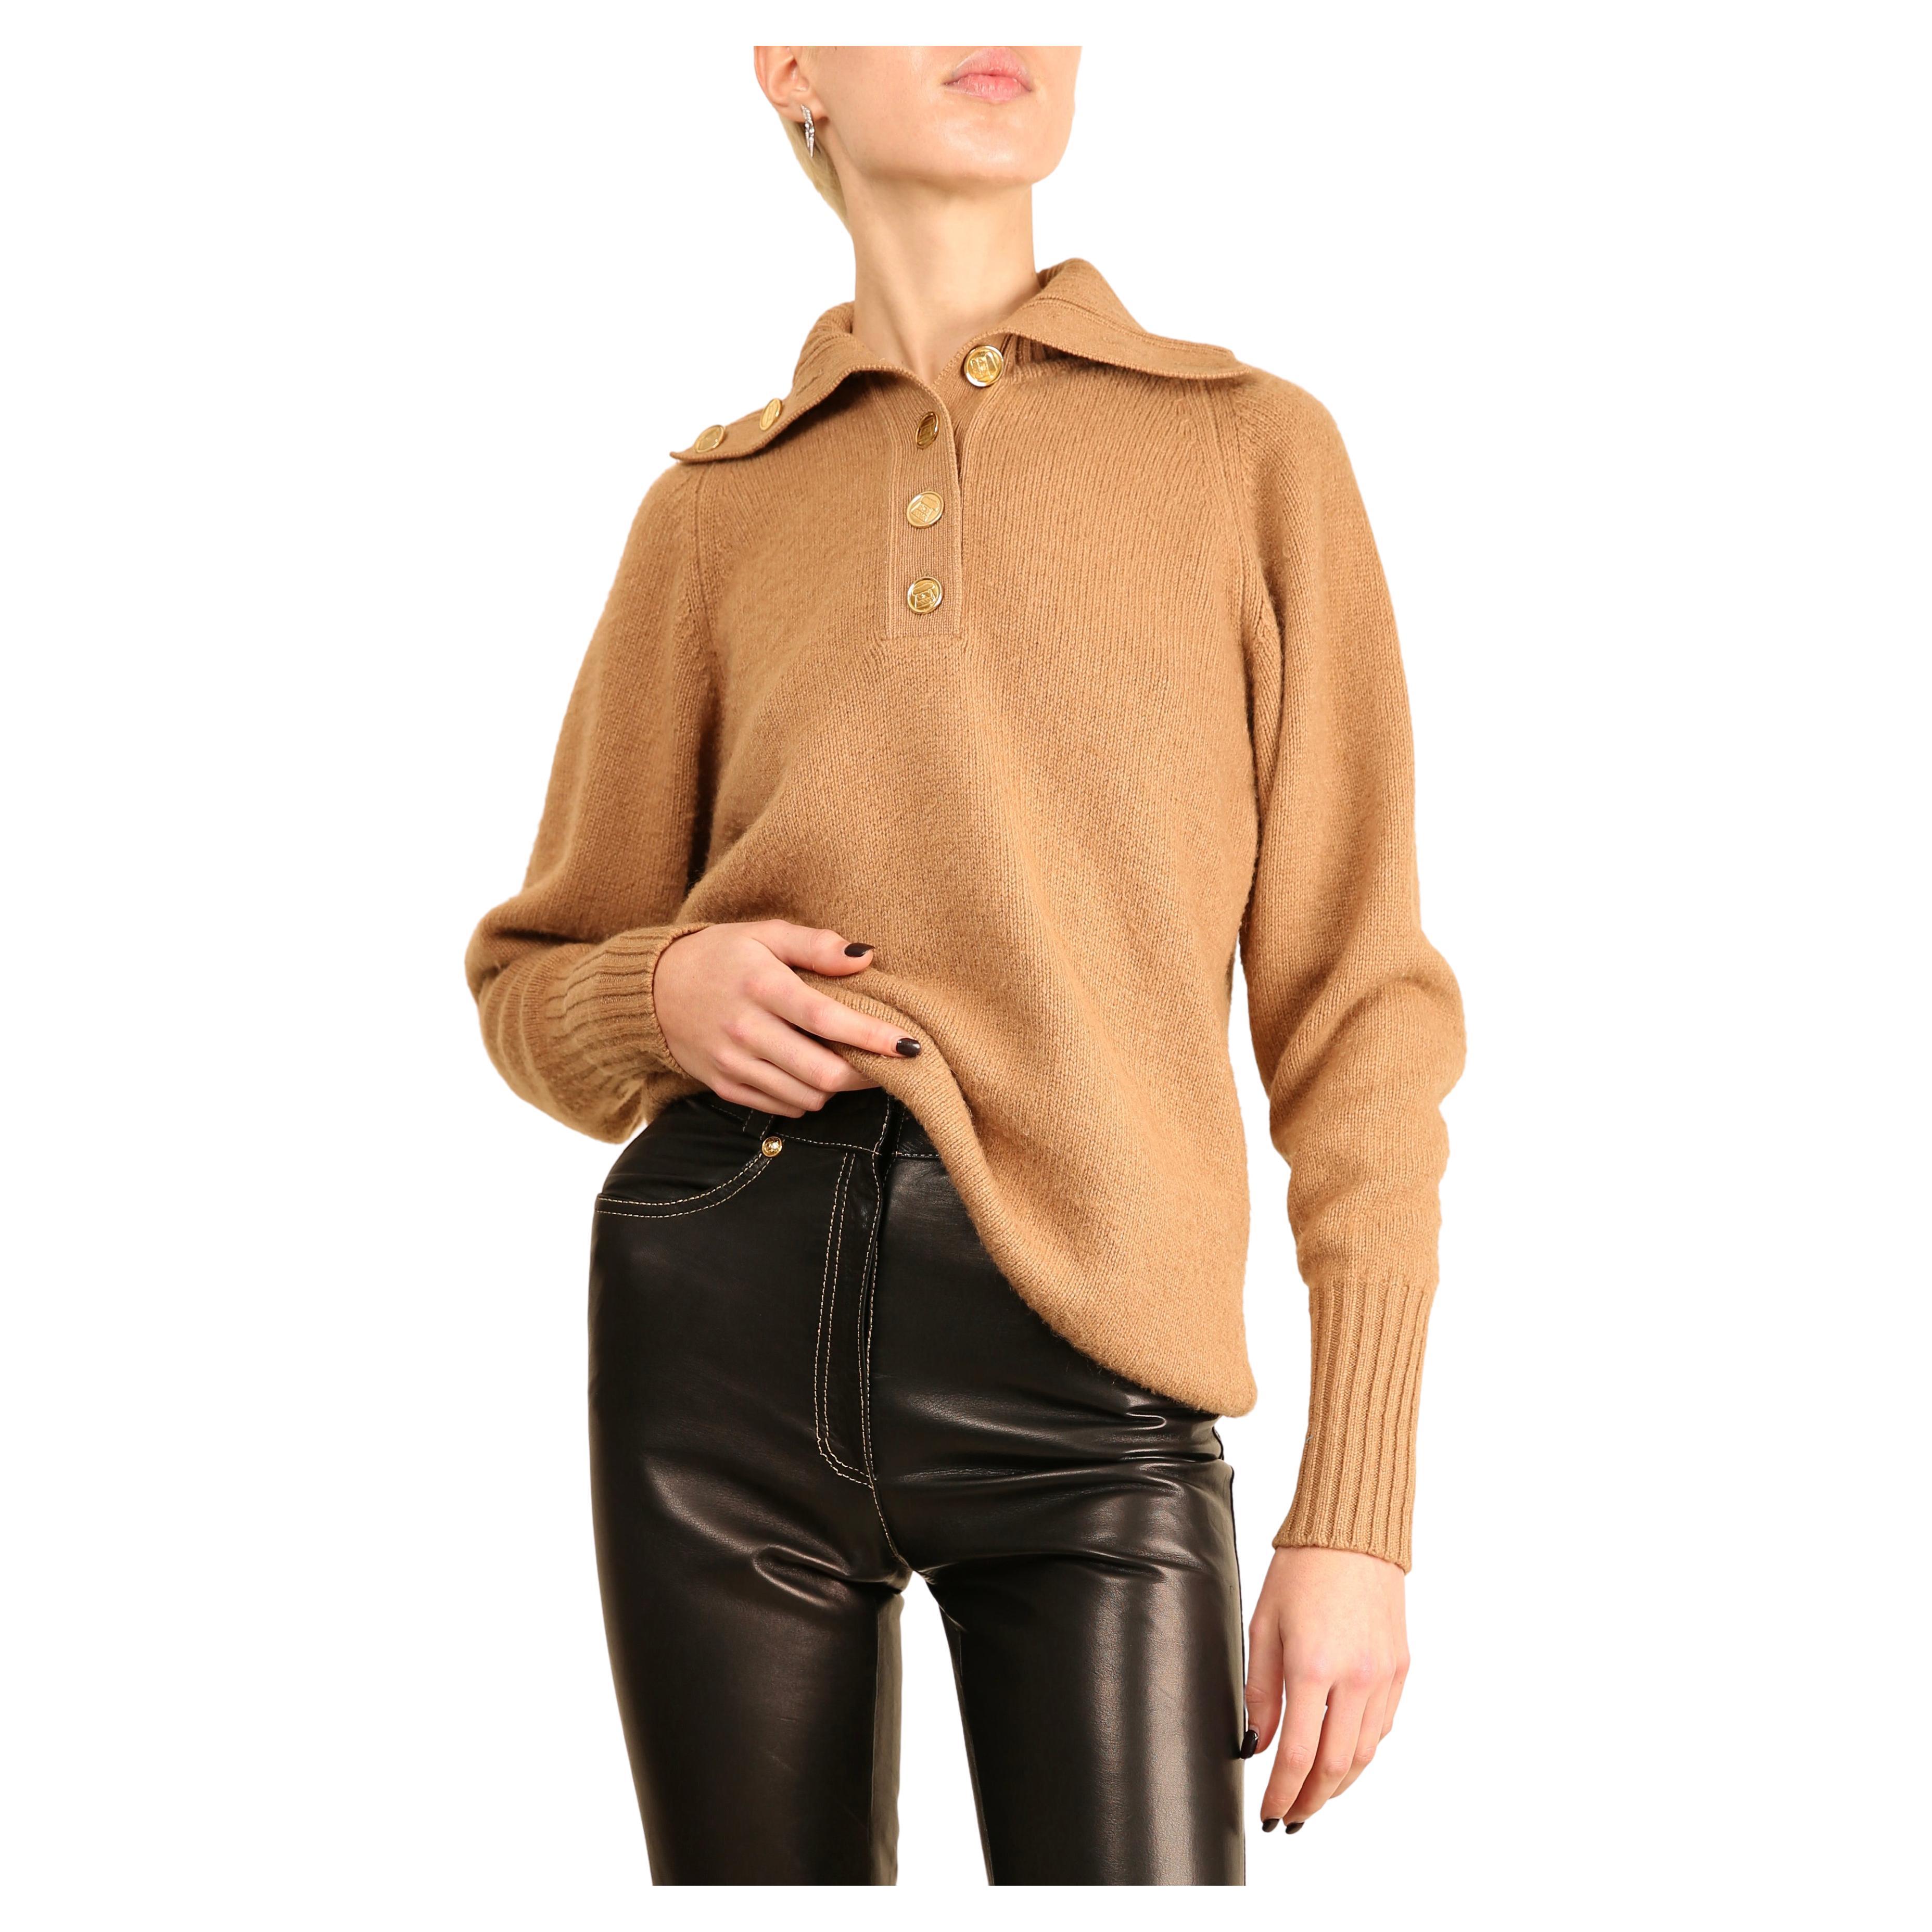 Chanel vtg tan camel beige turtleneck gold logo button cashmere dress sweater  For Sale